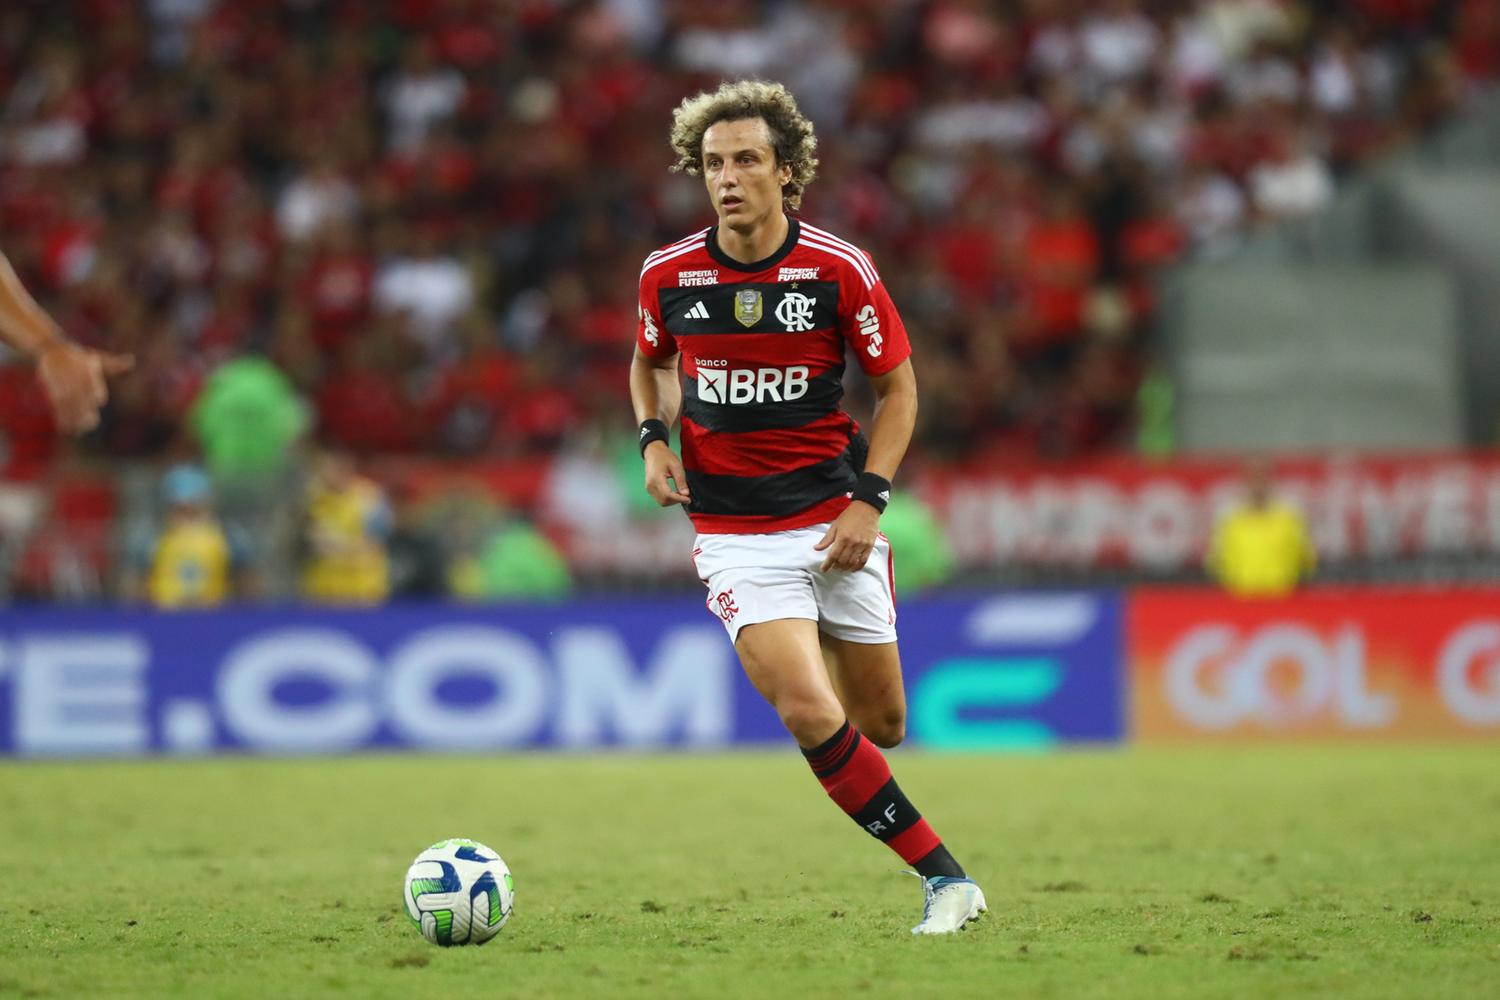 Onde assistir online jogo do Flamengo no Brasileirão ao vivo - 25/06